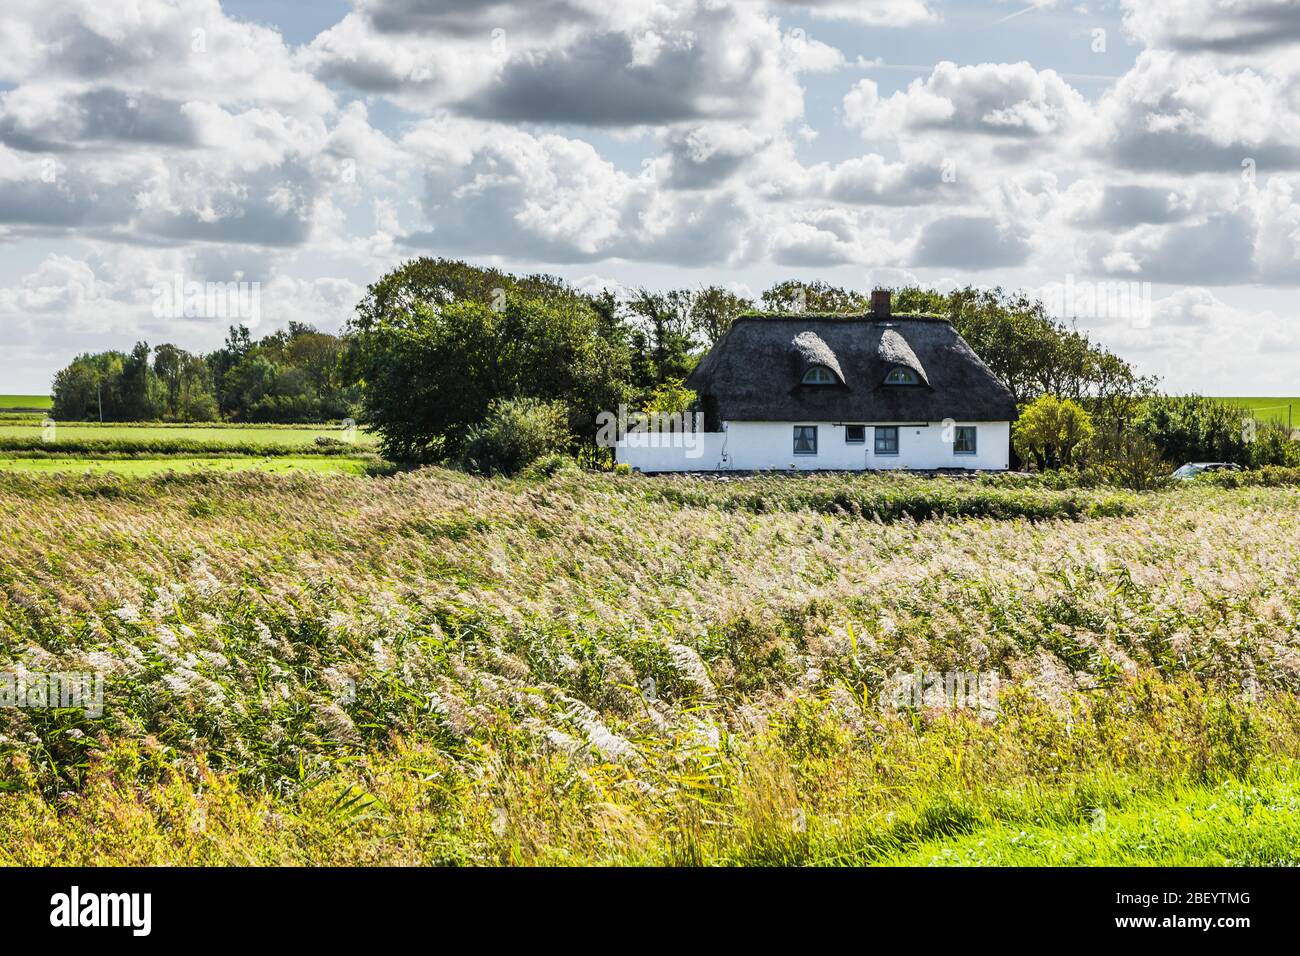 Ferme dans un paysage rural vert à la péninsule de Nordstrand, en Frise du Nord, en Allemagne Banque D'Images